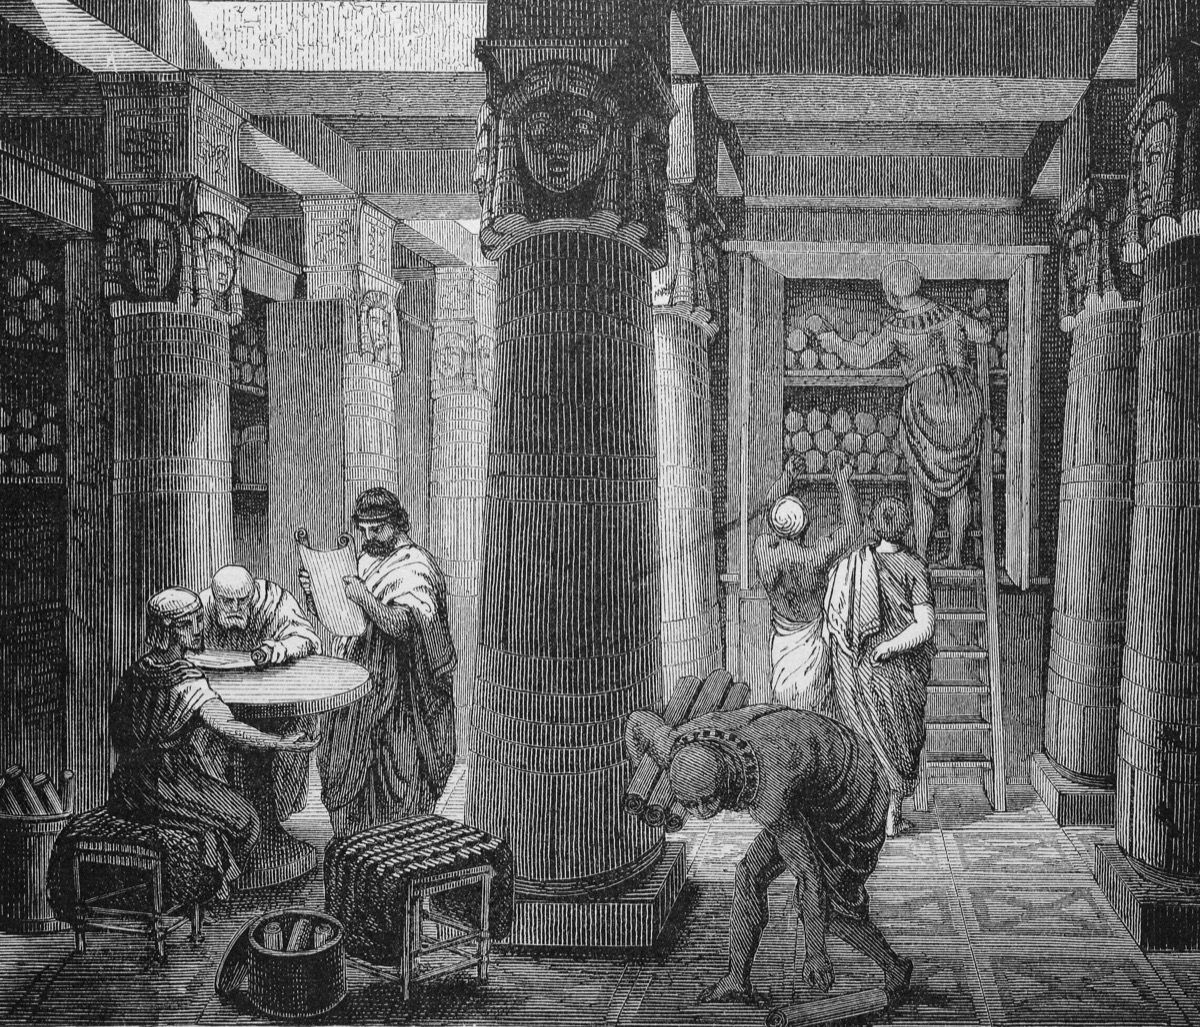 D771KB En la biblioteca de Alejandría, Egipto, xilografía histórica, circa 1870